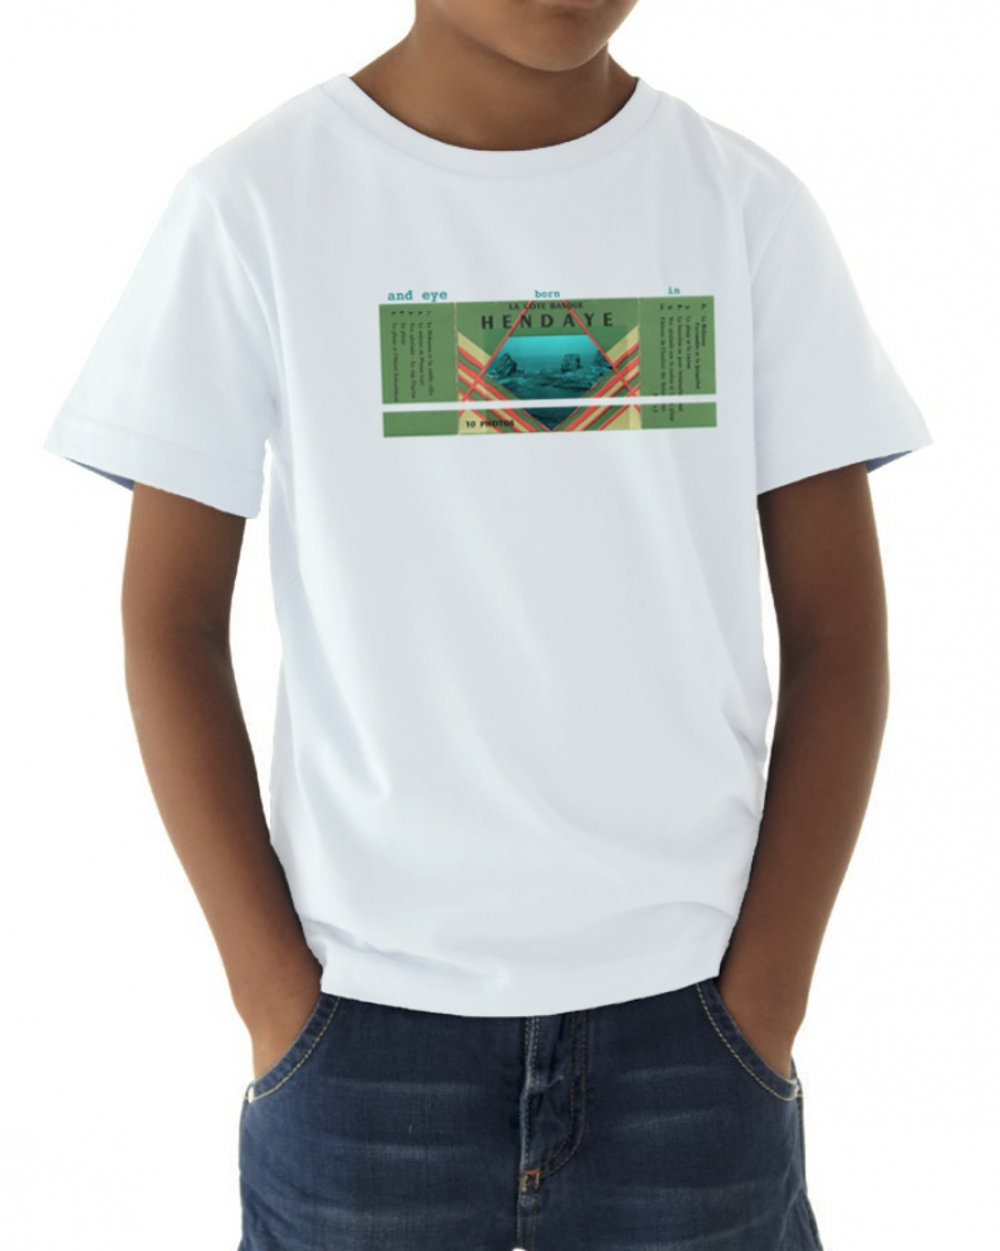 Camiseta para niños y niñas con imagen vintage de Hendaya